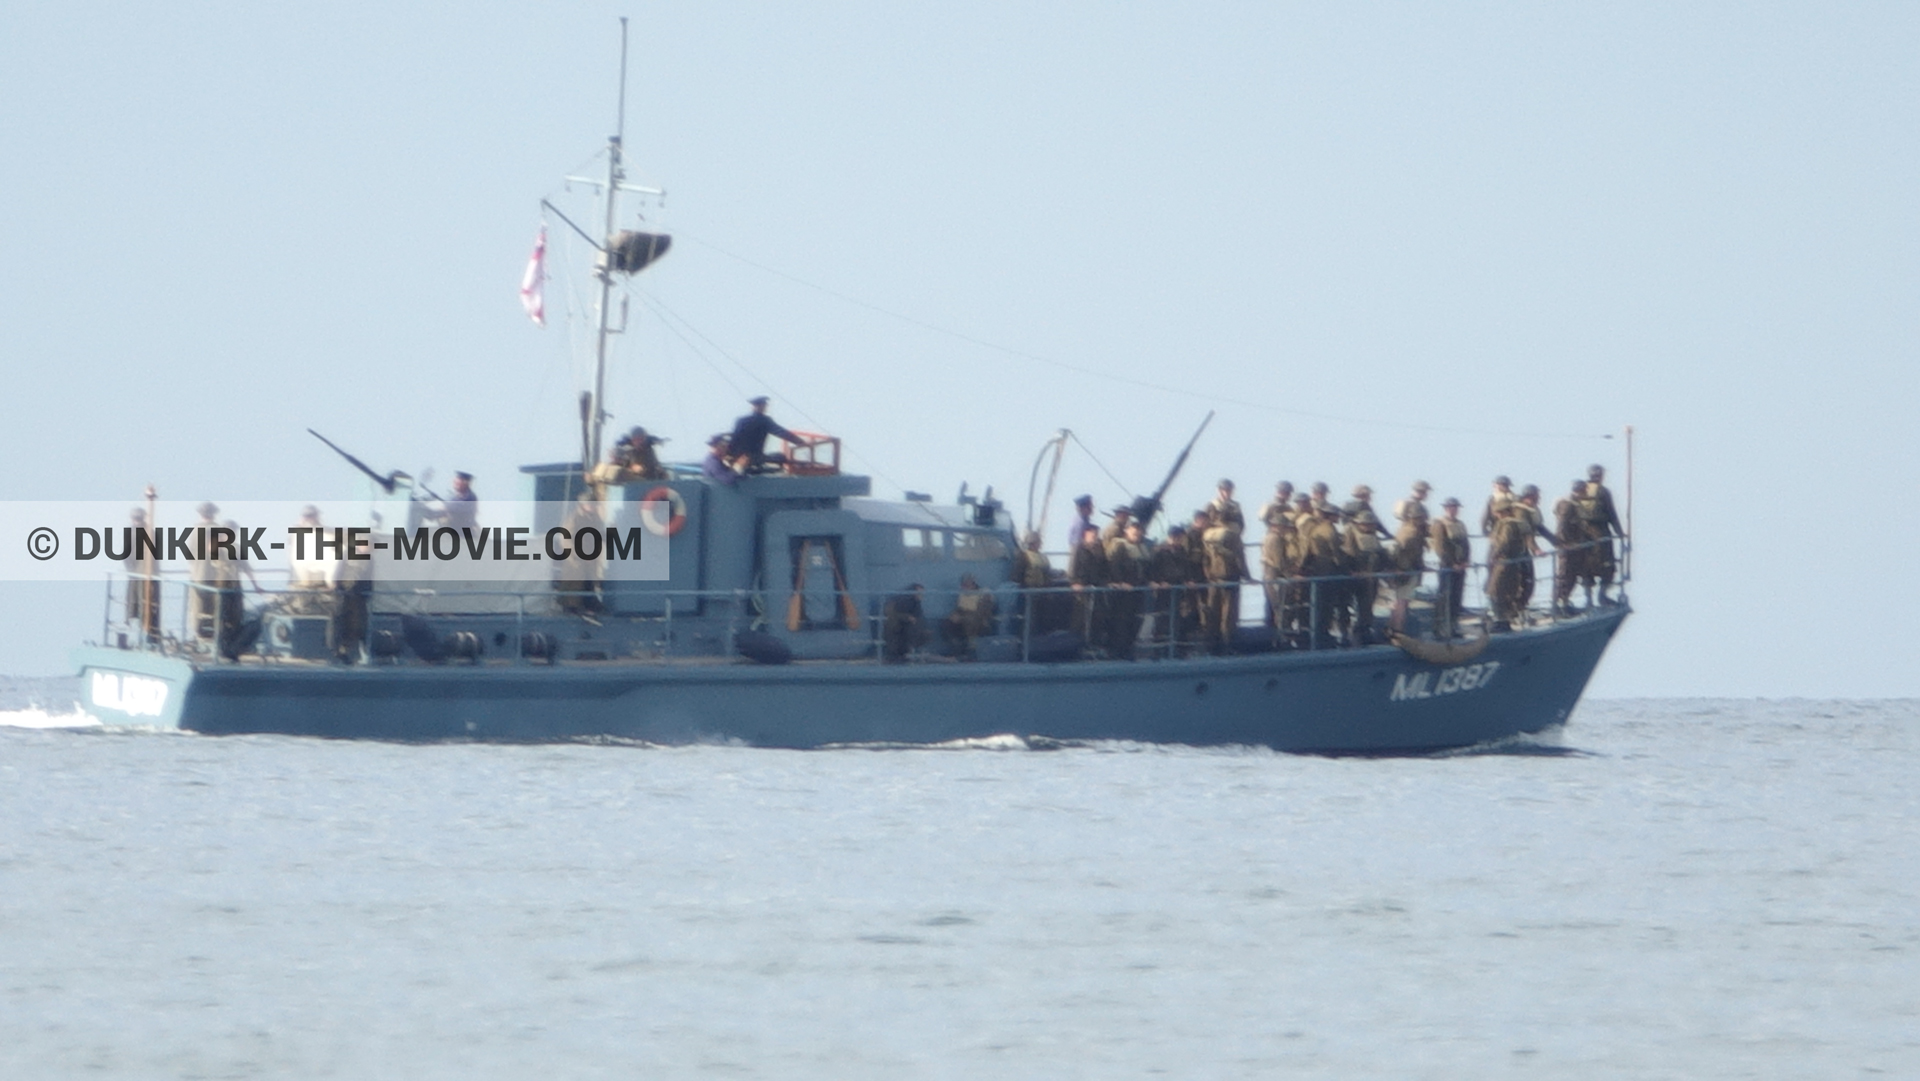 Fotos con extras, HMS Medusa - ML1387,  durante el rodaje de la película Dunkerque de Nolan